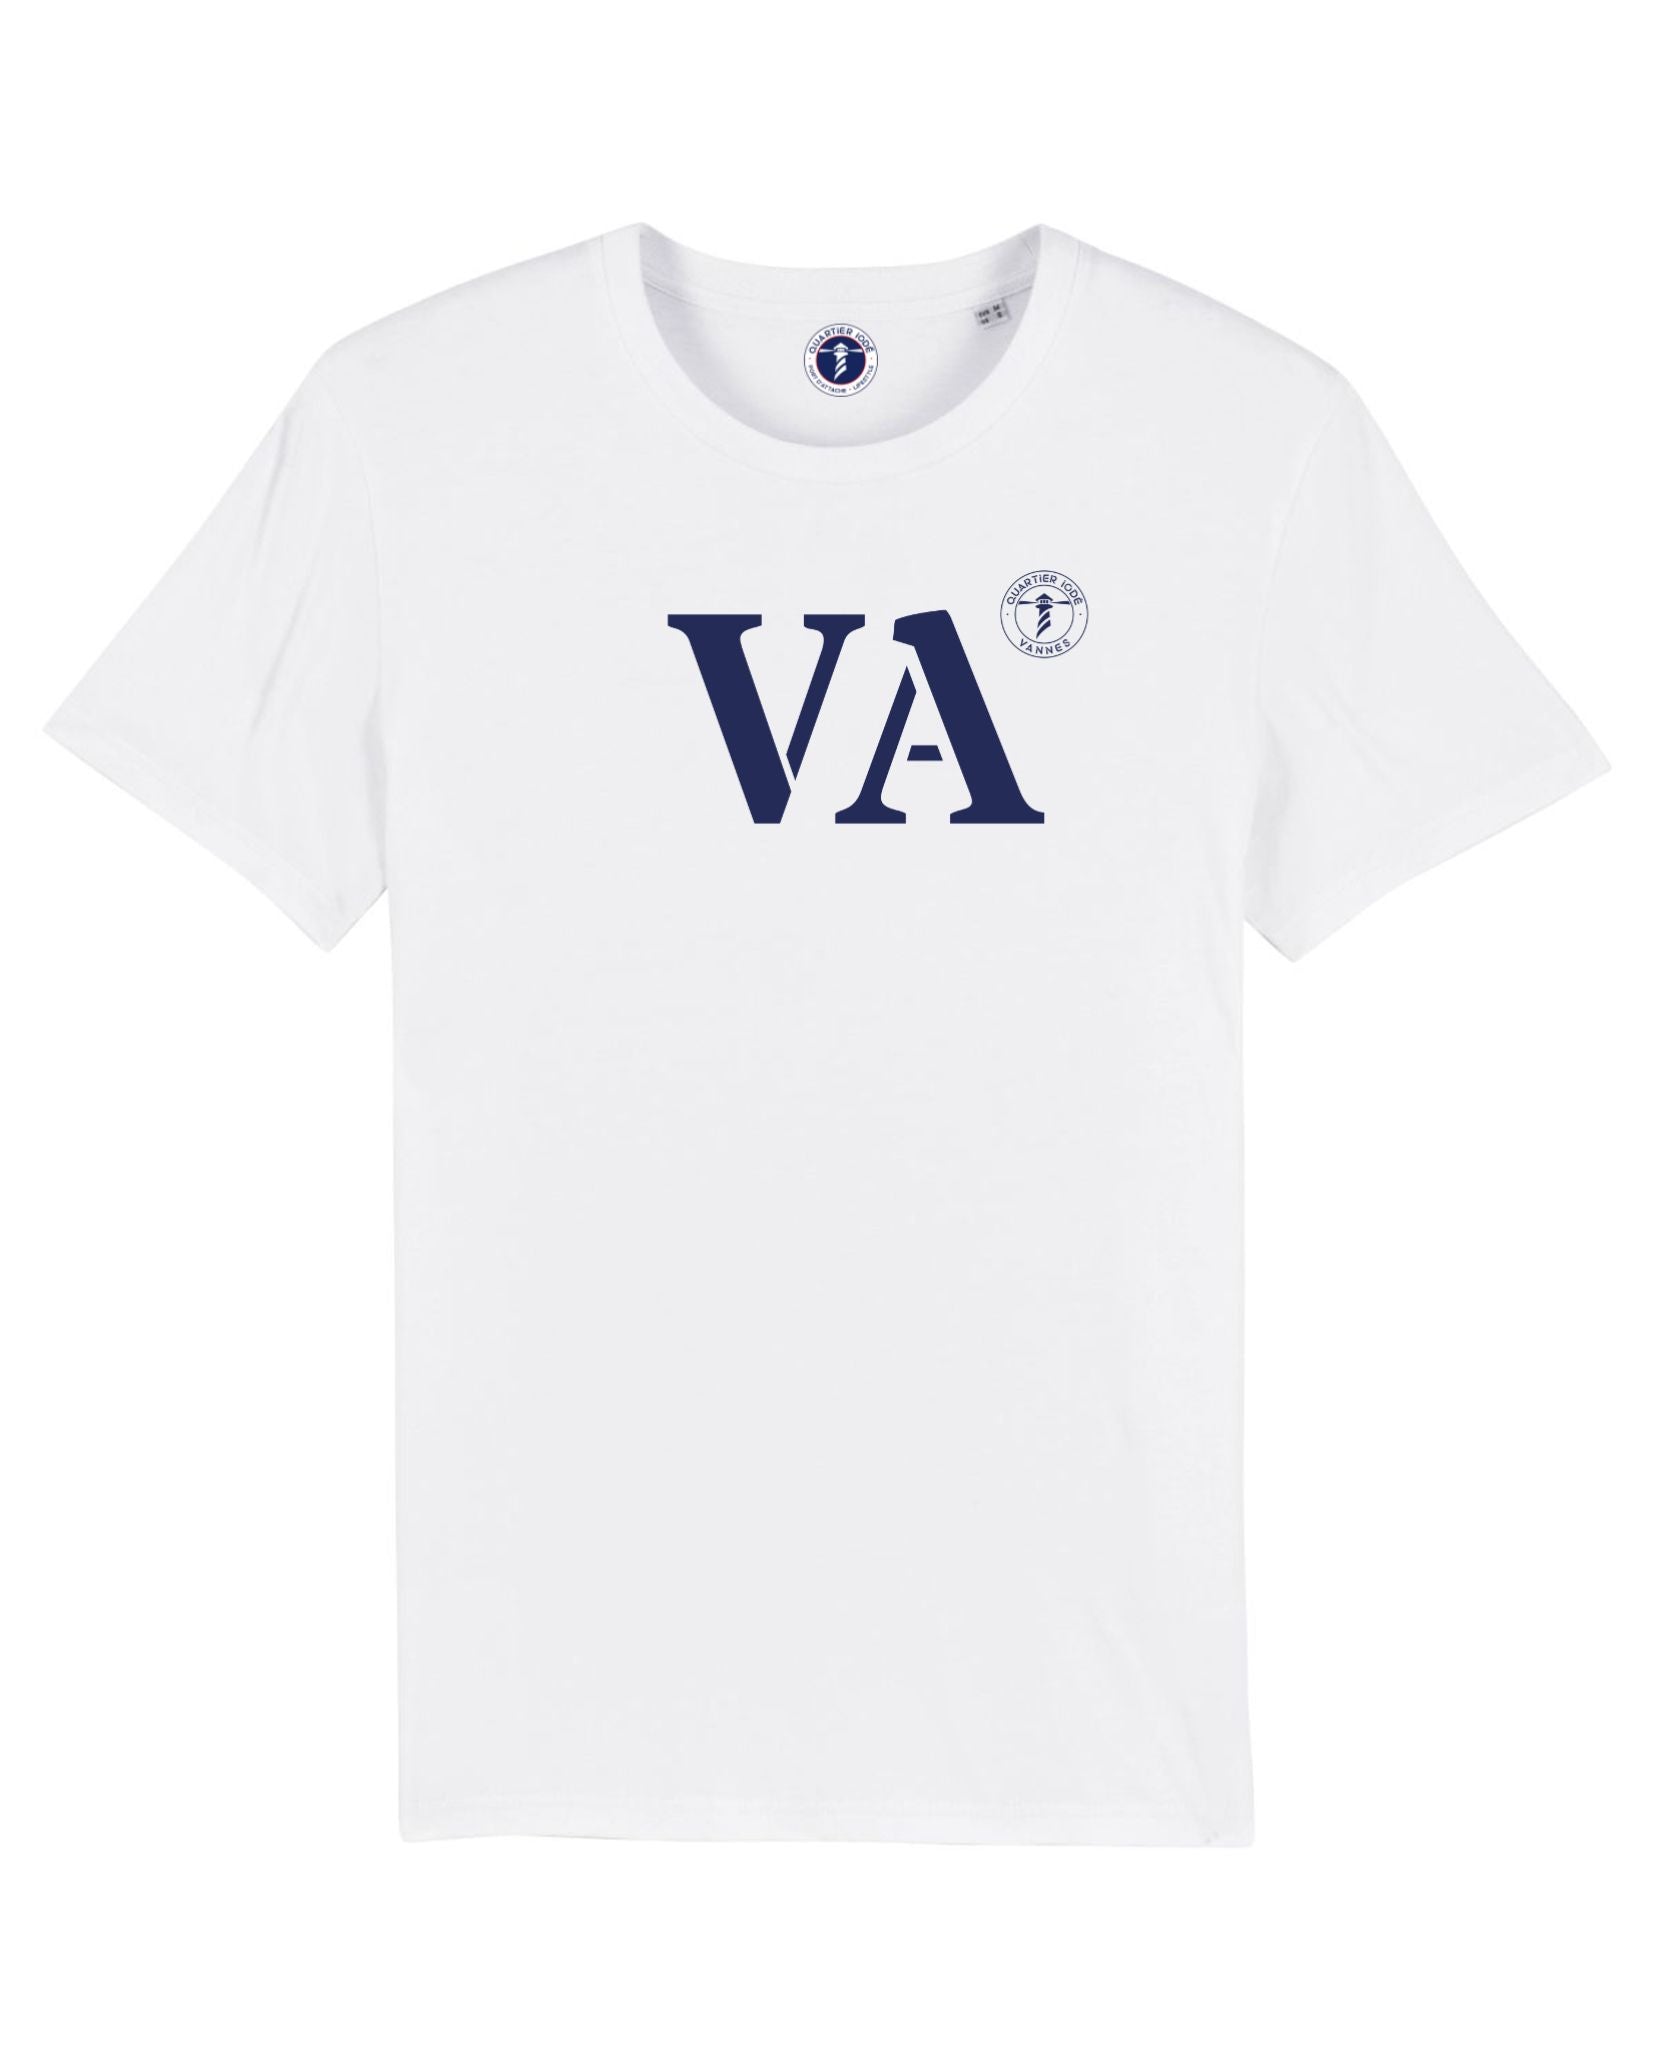 Quartier Iodé signe son Tshirt VA pour la ville de Vannes. un design épuré et intemporel pour ce tshirt marin durable et éthique en coton bio. 